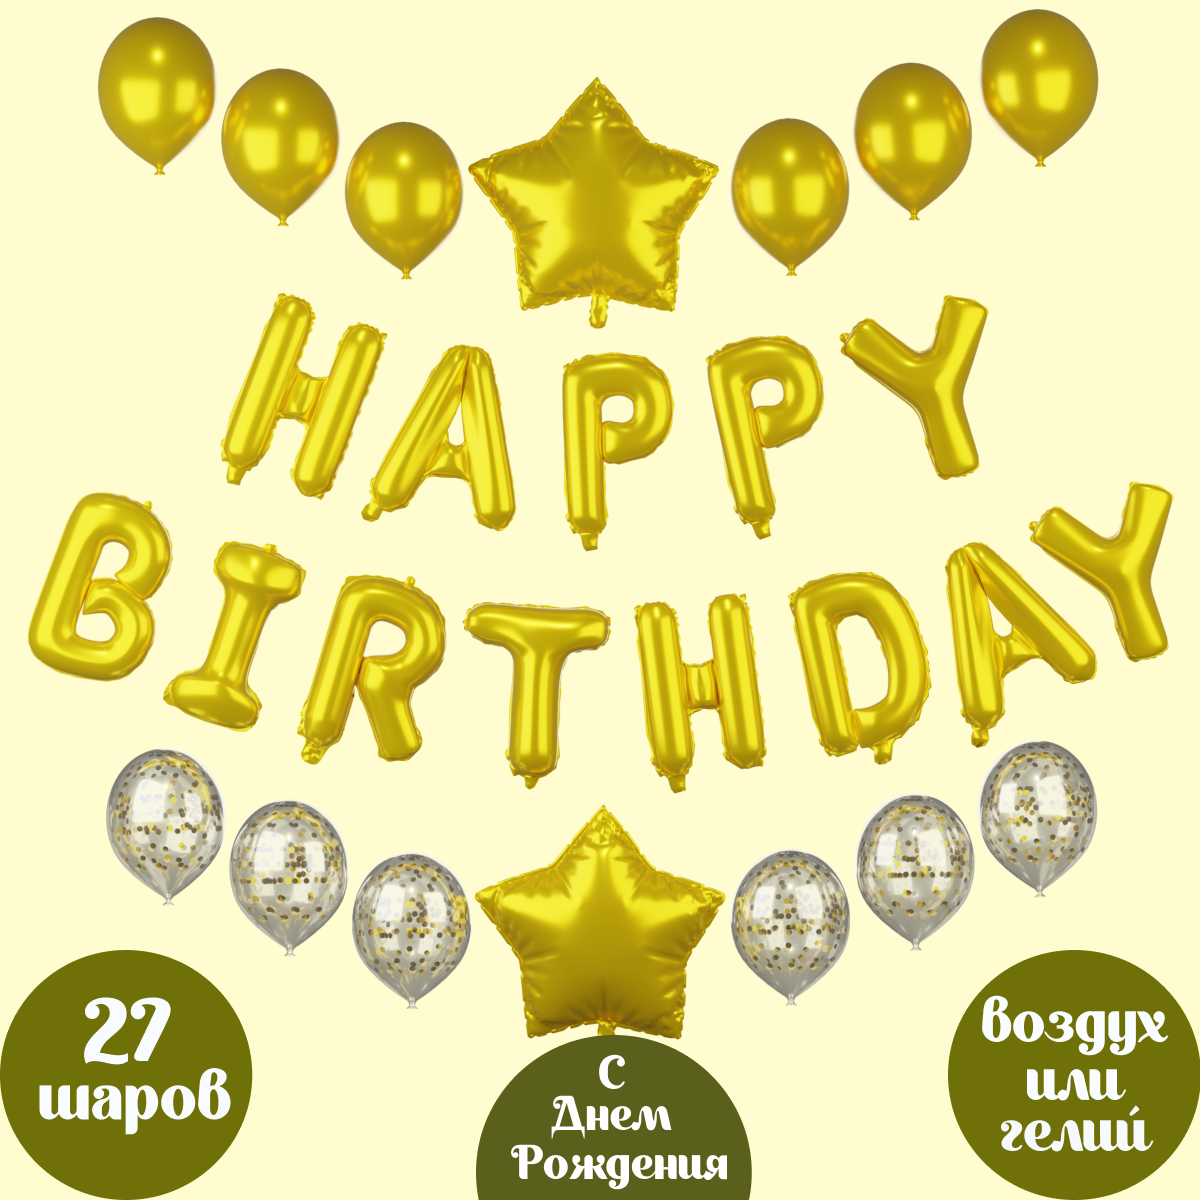 Воздушные шары Happy Birthday Мишины шарики для фотозоны на день рождения латексные и фольгированные - фото 1